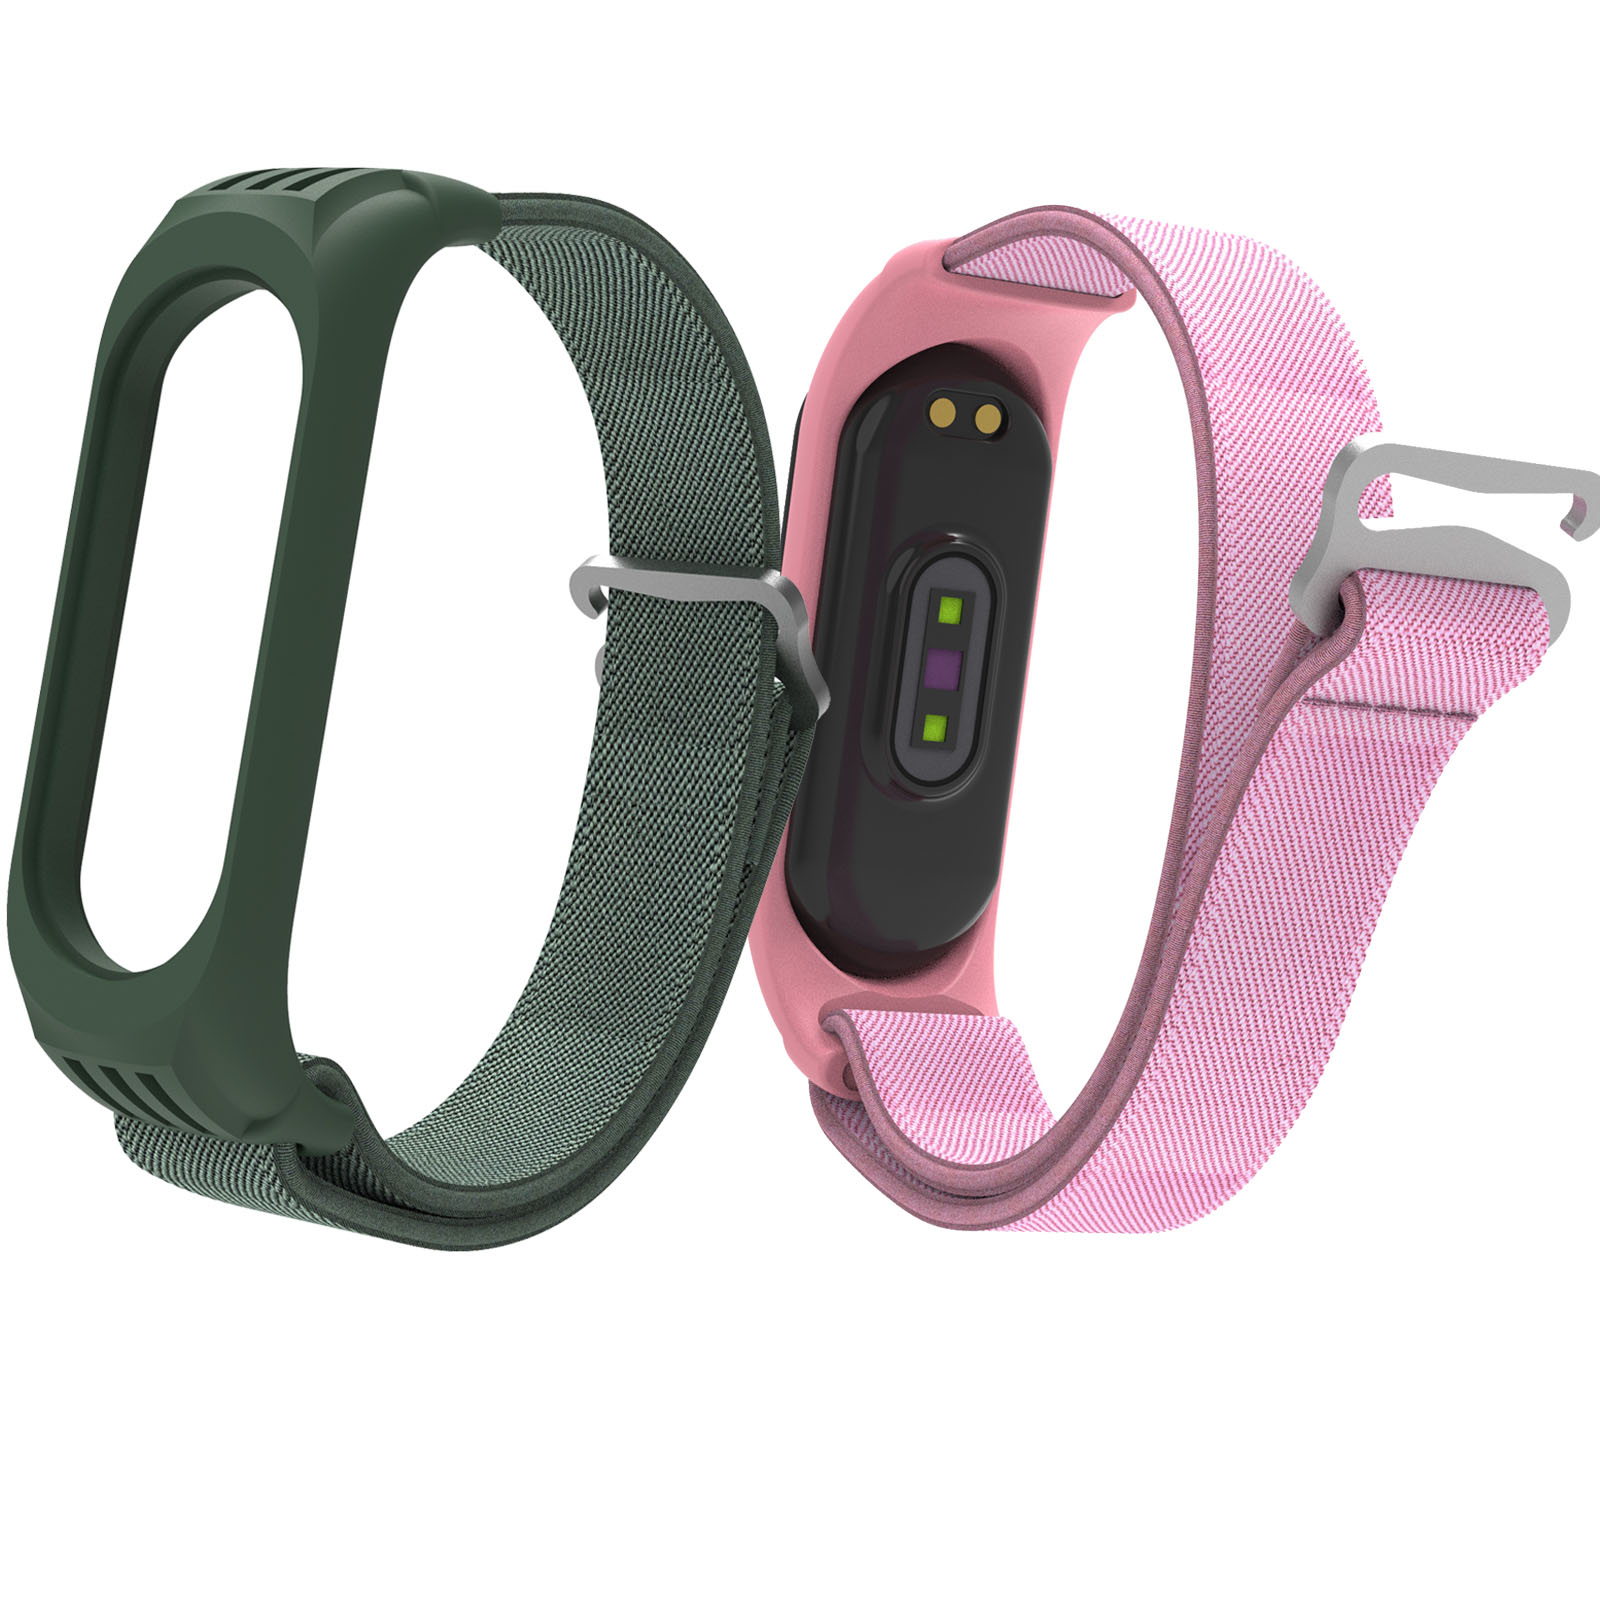 CBXM568 Heiße Produkte Sportschleife Nylon Elastische Uhr Band Armbandarmband für Xiaomi MI-Band 6 5 4 3 Smartwatch